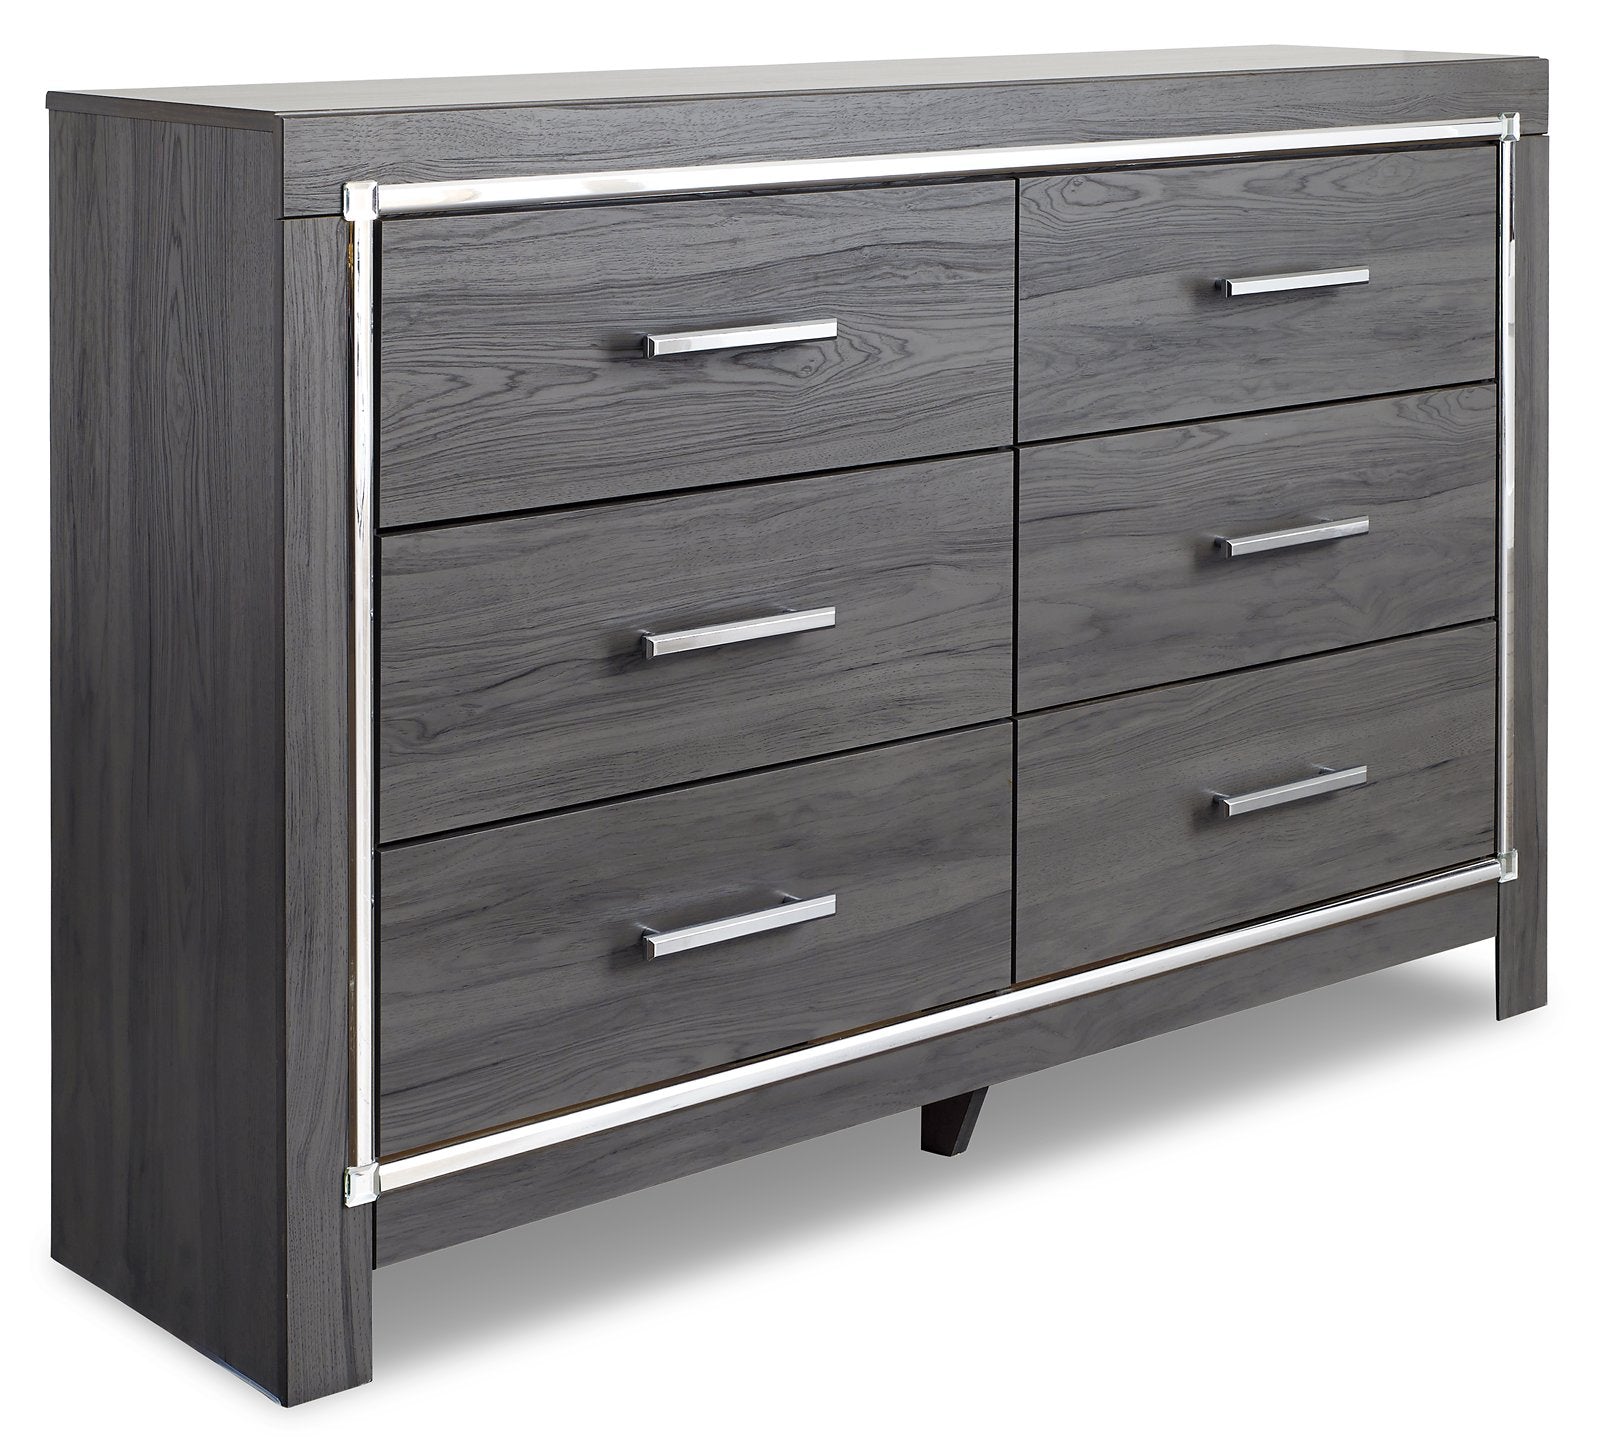 Lodanna Dresser and Mirror - Half Price Furniture